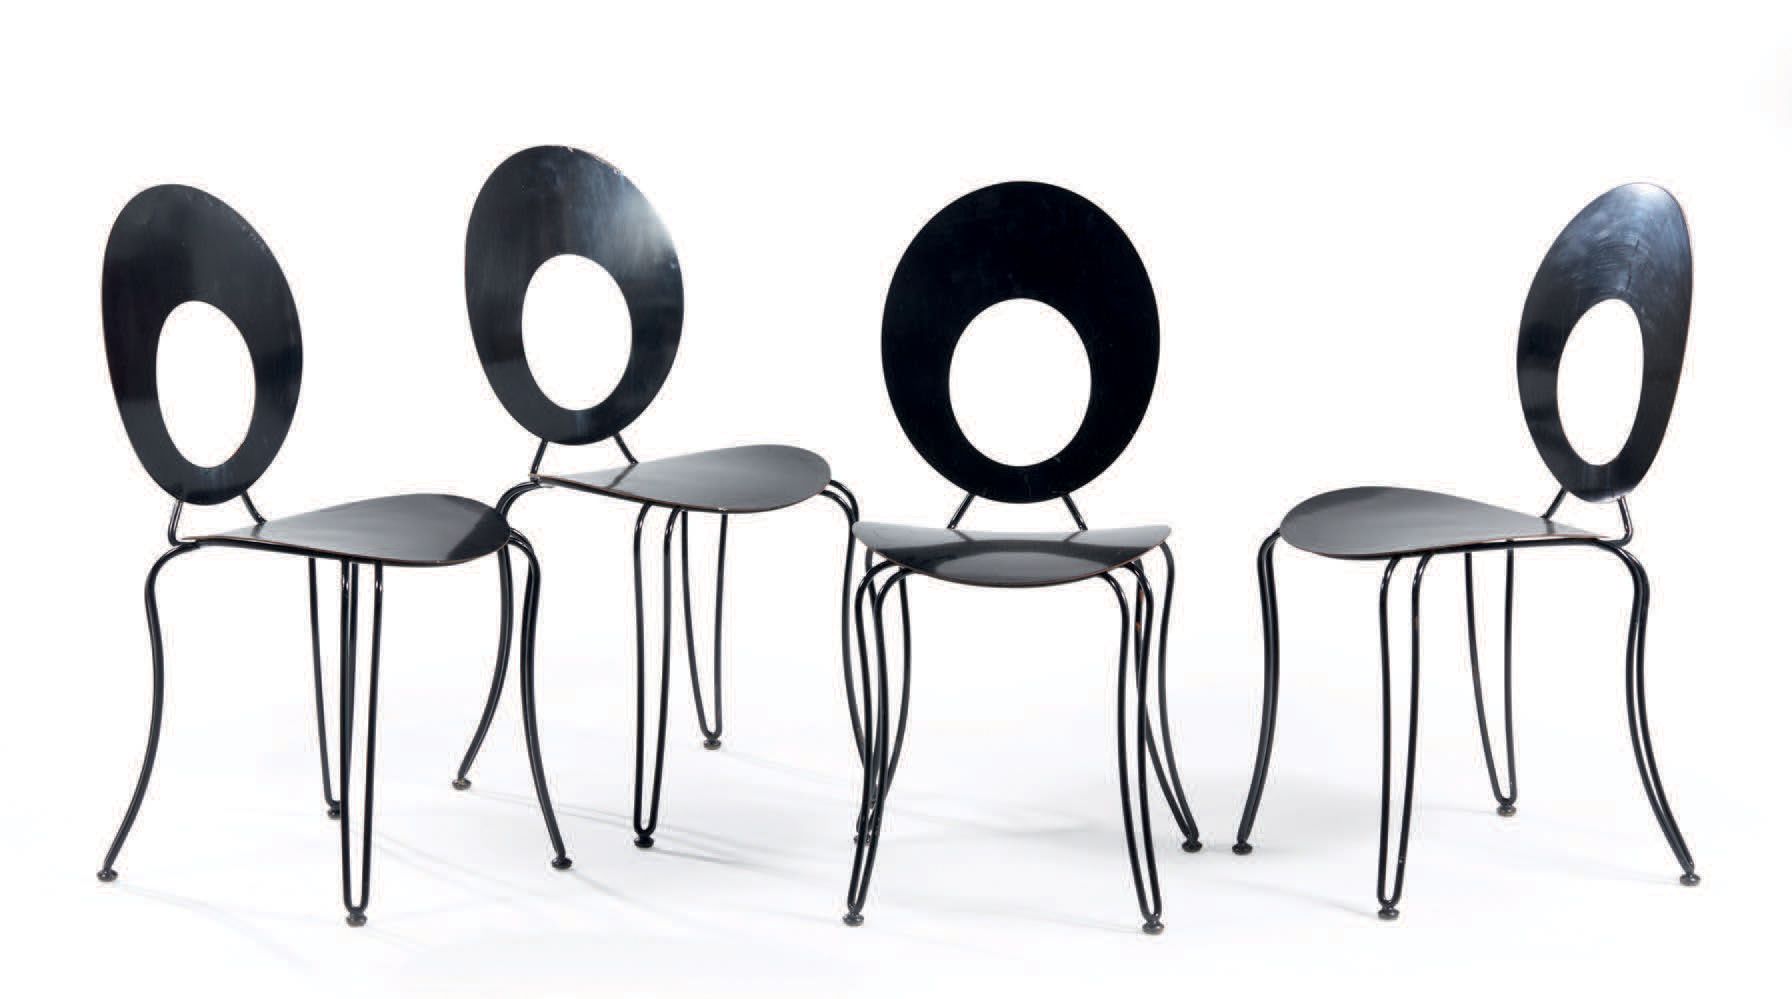 TRAVAIL FRANÇAIS 一套四把黑色漆面金属椅，背部有镂空设计
H : 89 W : 40 D : 53 cm
(漆面有裂痕和缺失)